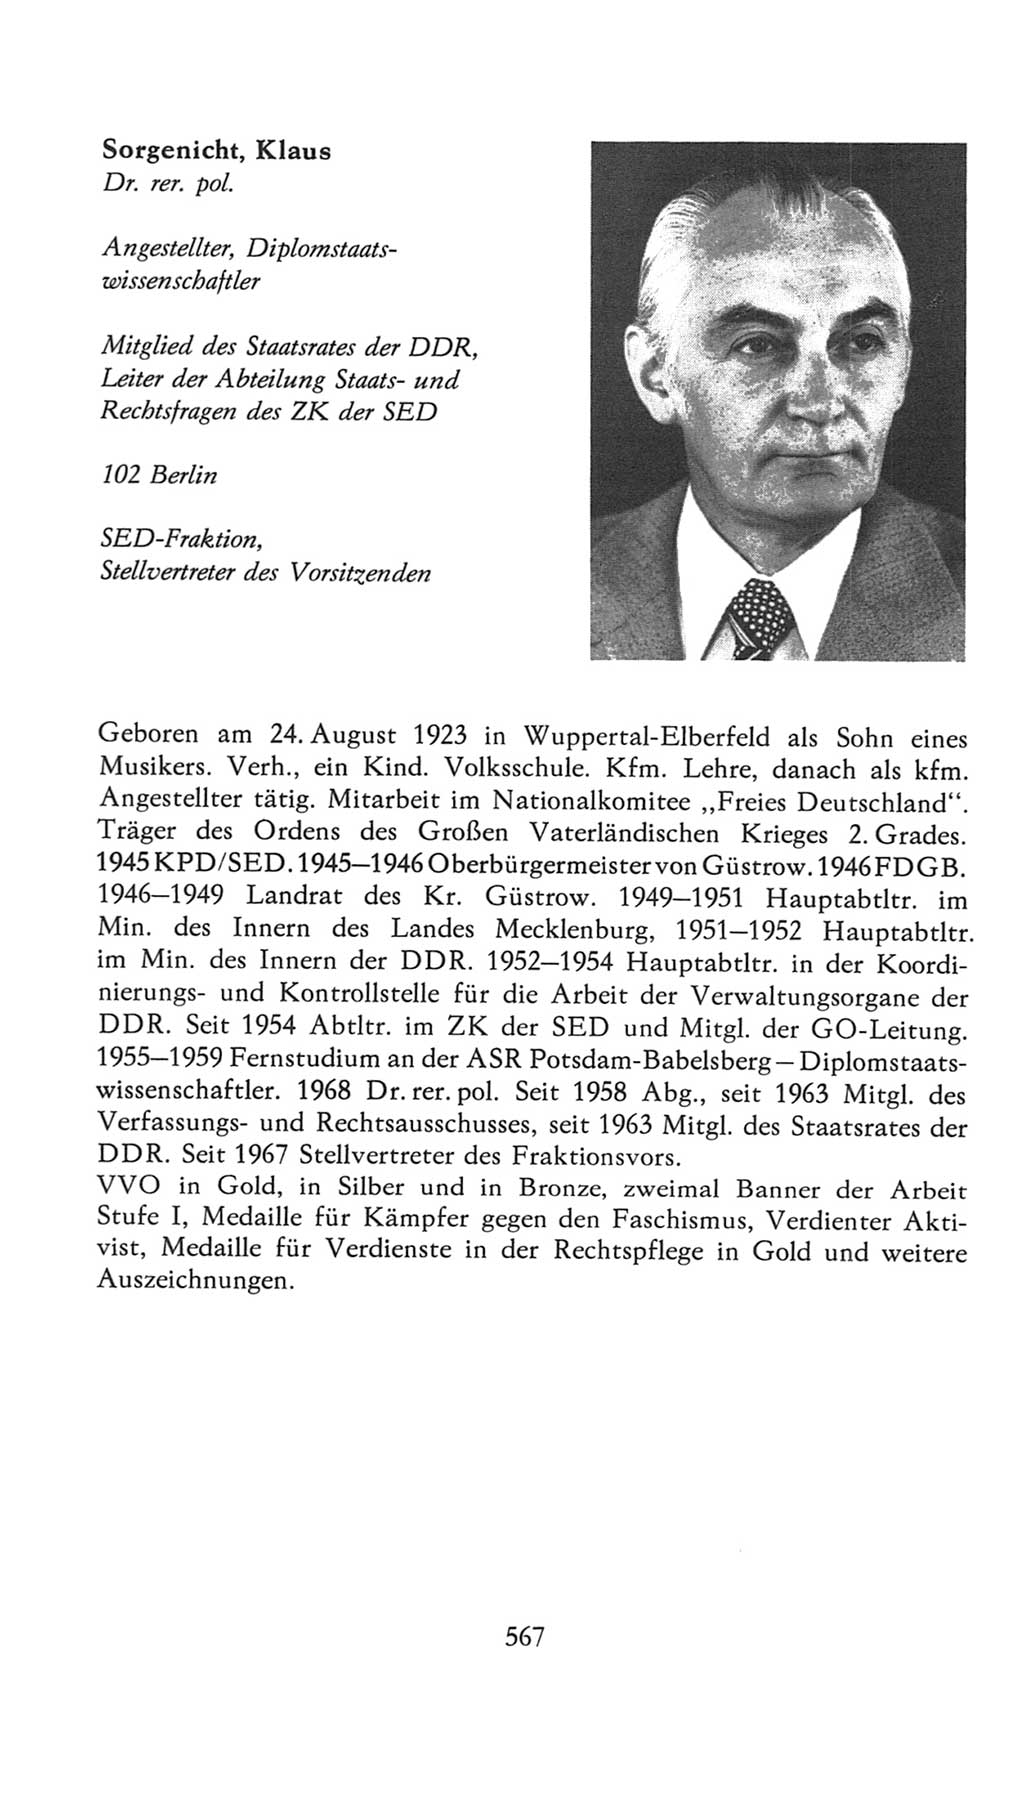 Volkskammer (VK) der Deutschen Demokratischen Republik (DDR), 7. Wahlperiode 1976-1981, Seite 567 (VK. DDR 7. WP. 1976-1981, S. 567)